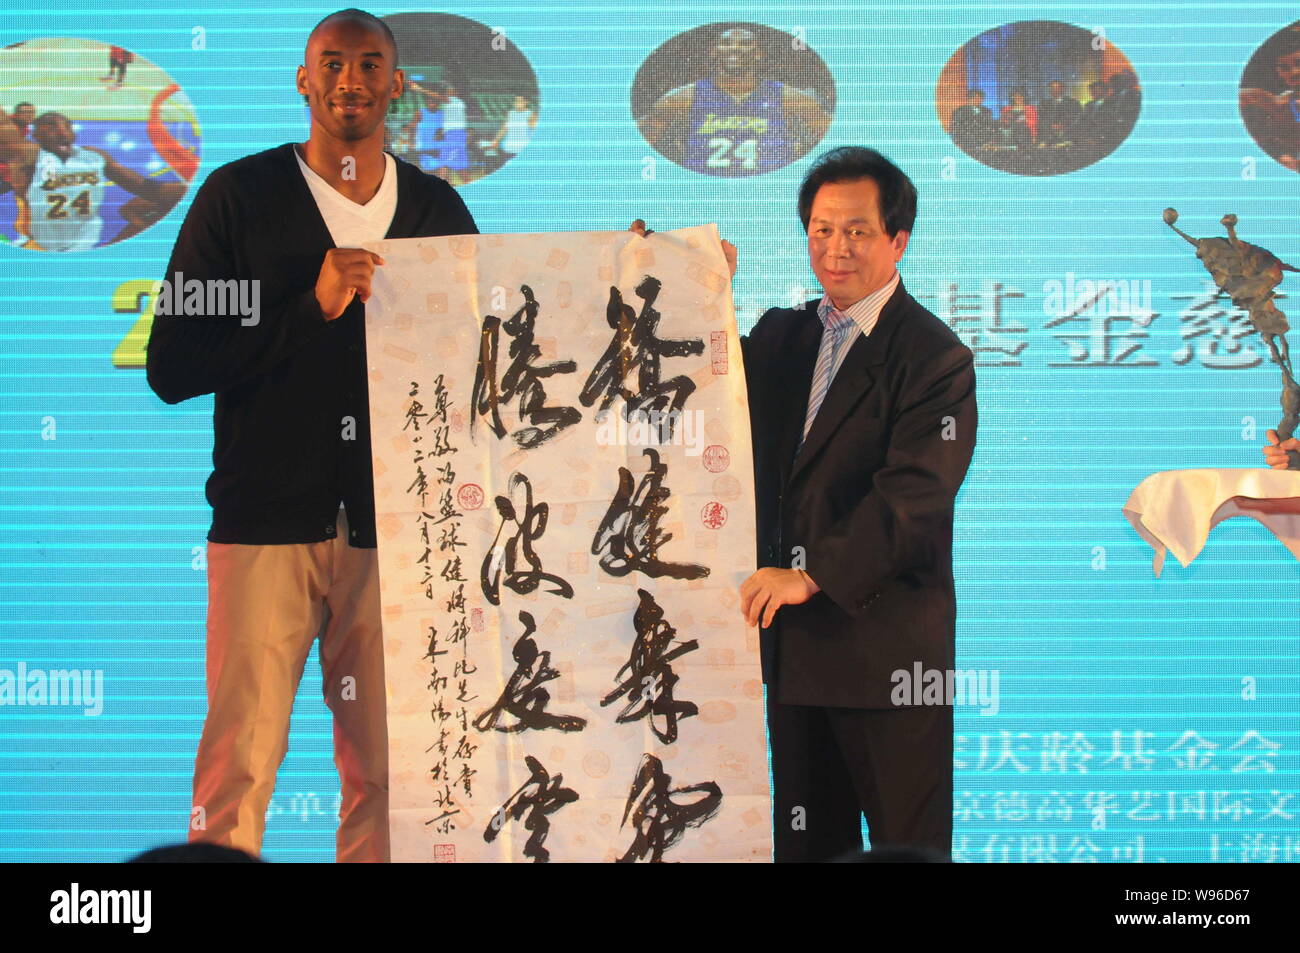 La estrella de la NBA KOBE Byrant, izquierda, recibe un trabajo caligráfico como regalo de un invitado durante un banquete de caridad de la Kobe Bryant en Shanghai, China Fund Foto de stock